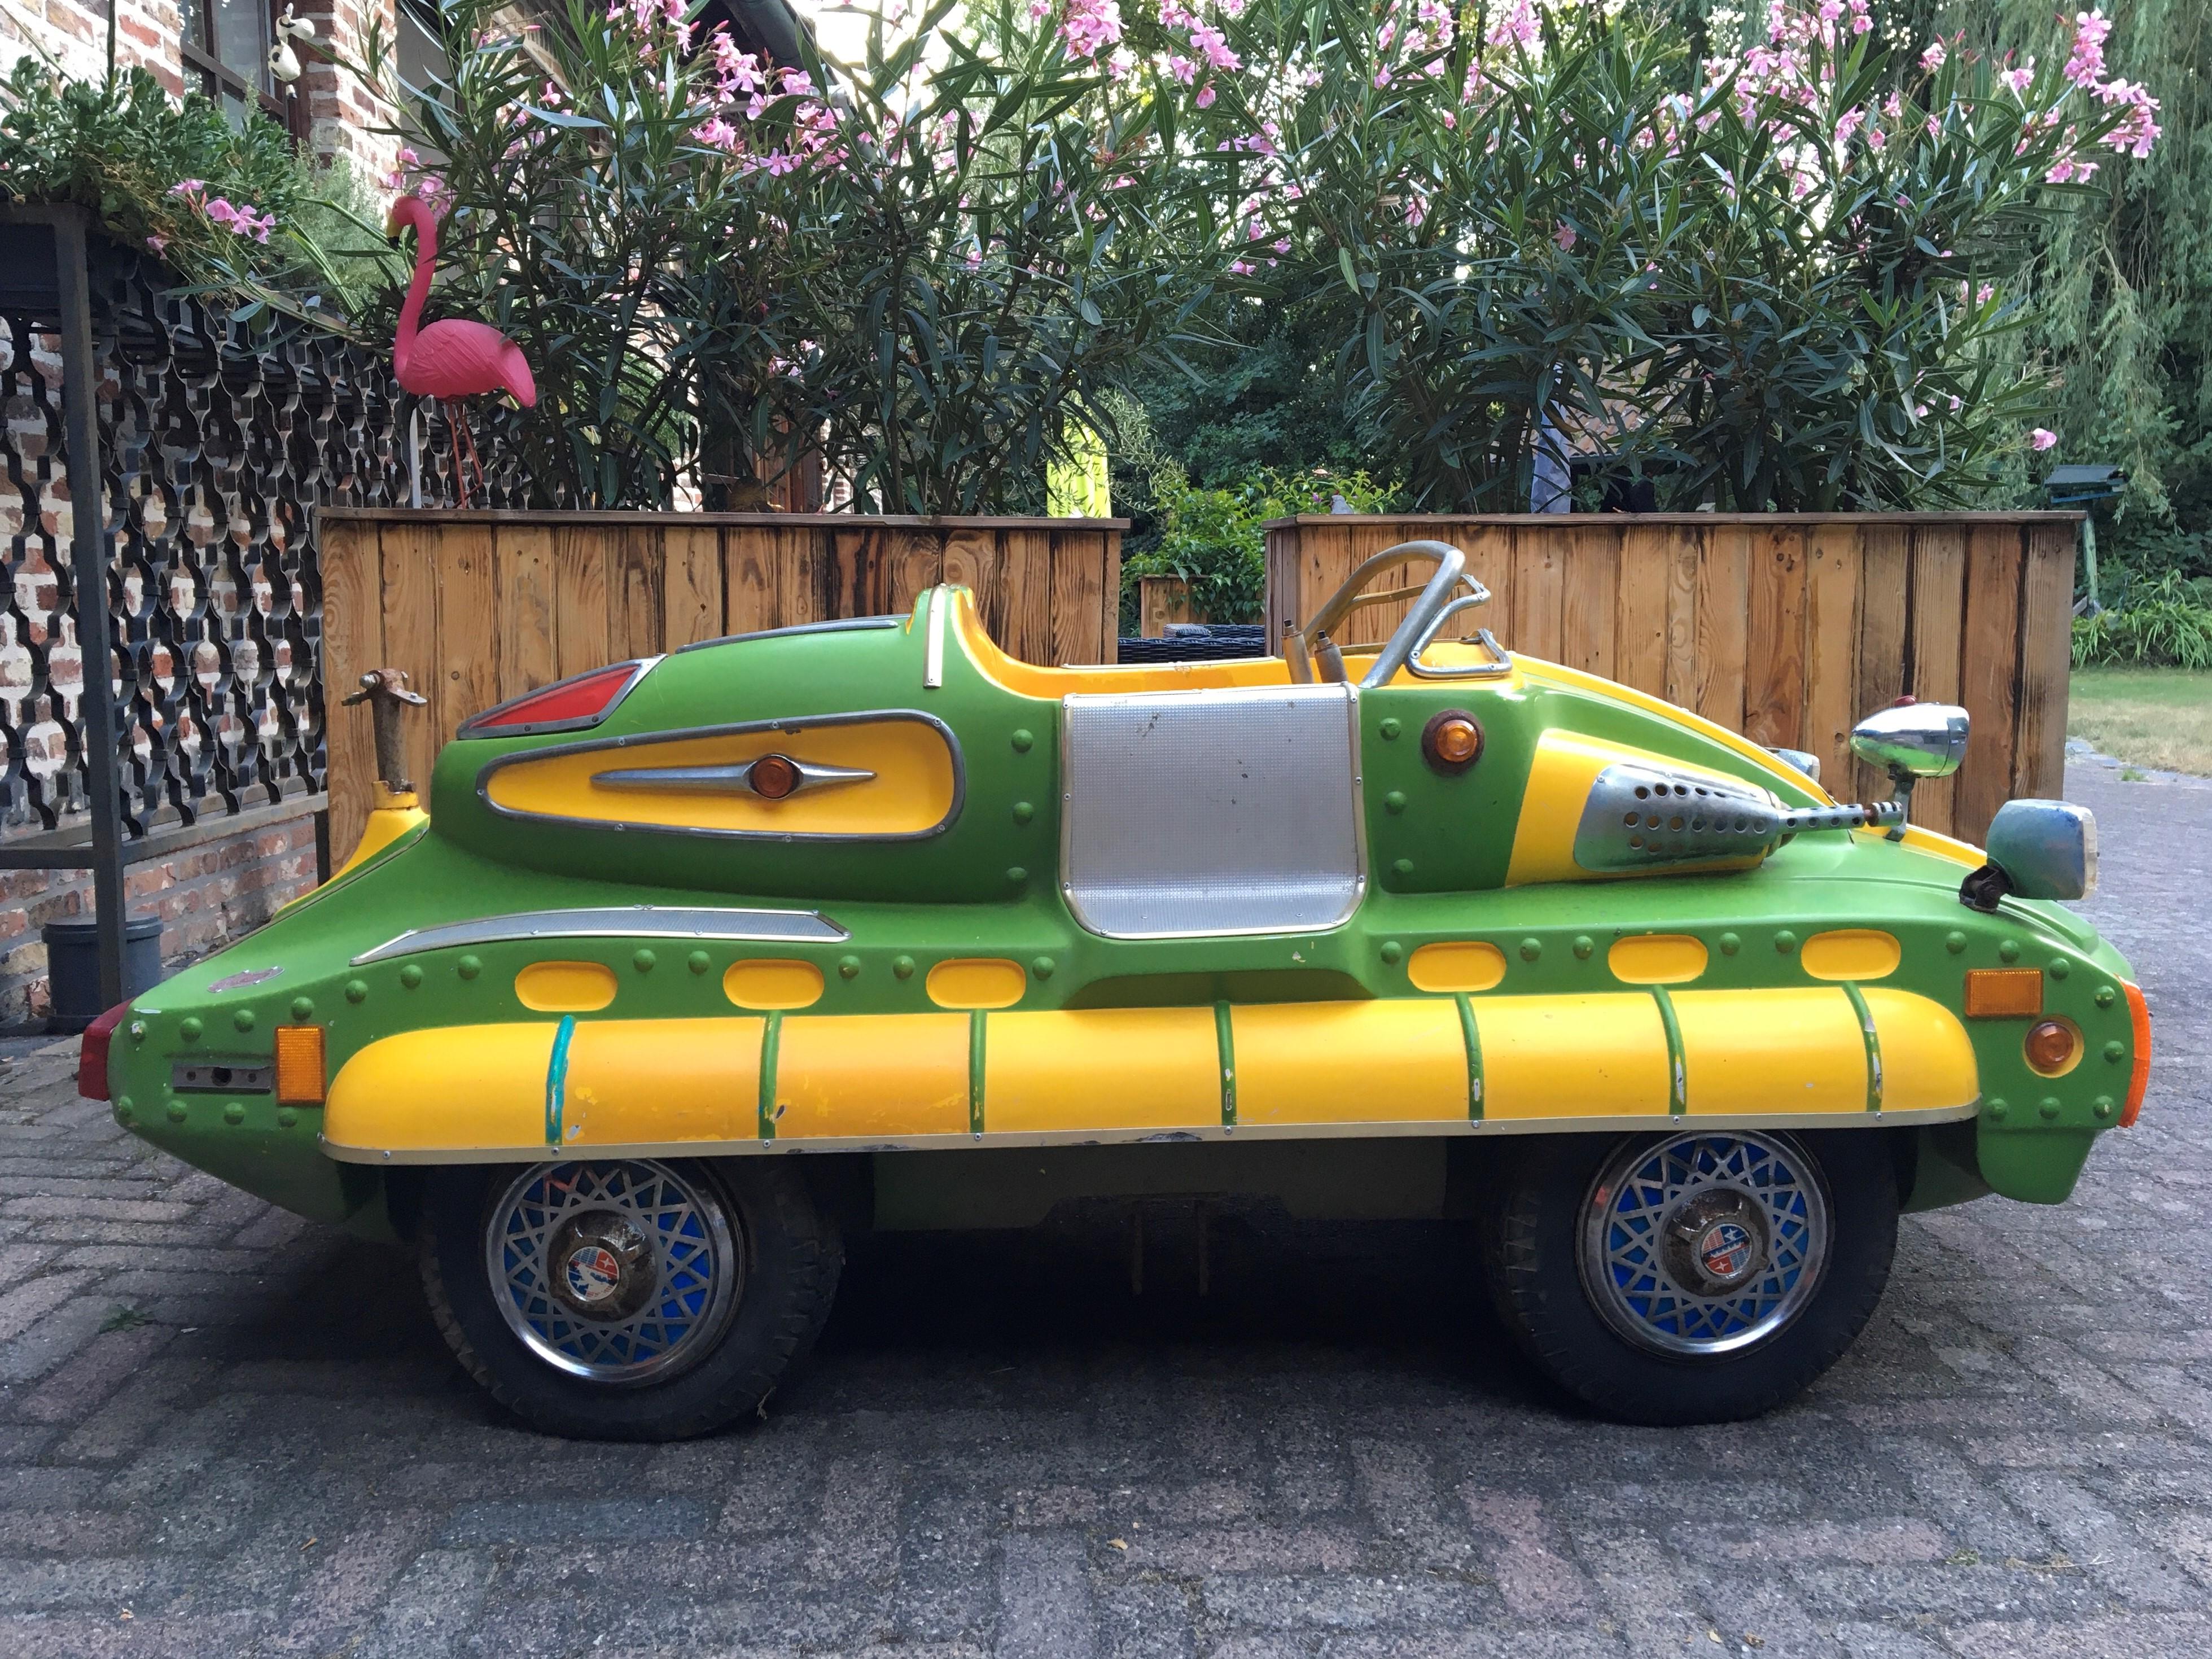 Voiture de foire de l'ère spatiale - voiture de carrousel futuriste par Sartori Claudio Italie, 
une société italienne créée au début des années 50 et spécialisée dans les voitures pour enfants et autres grandes attractions pour le secteur du